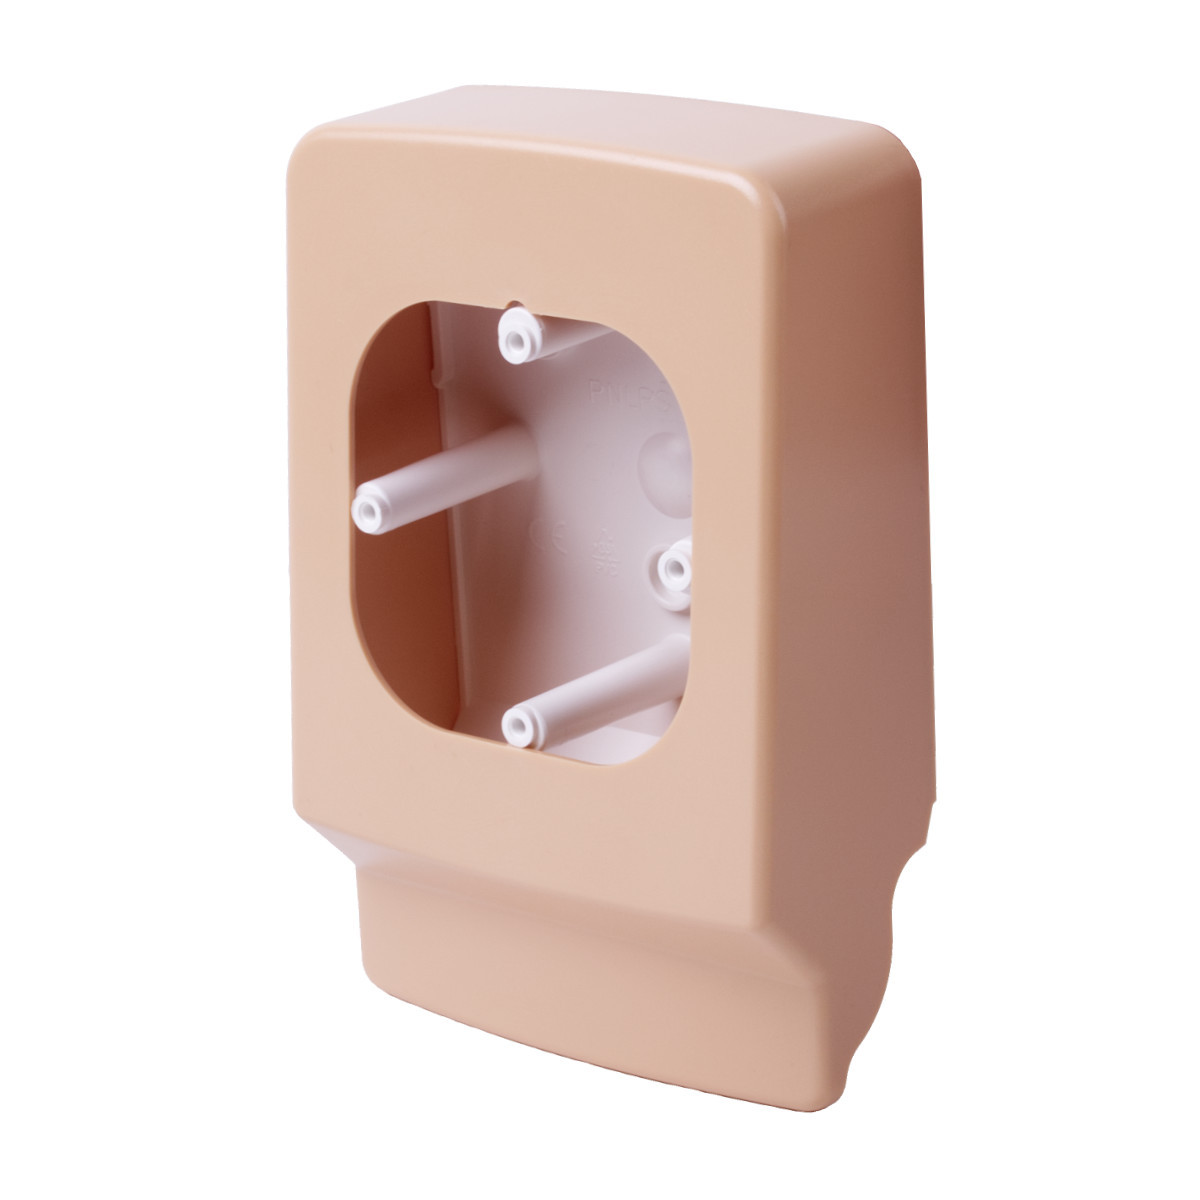 Приладовий носій для  кабельних каналів LP 35 (береза рожева)